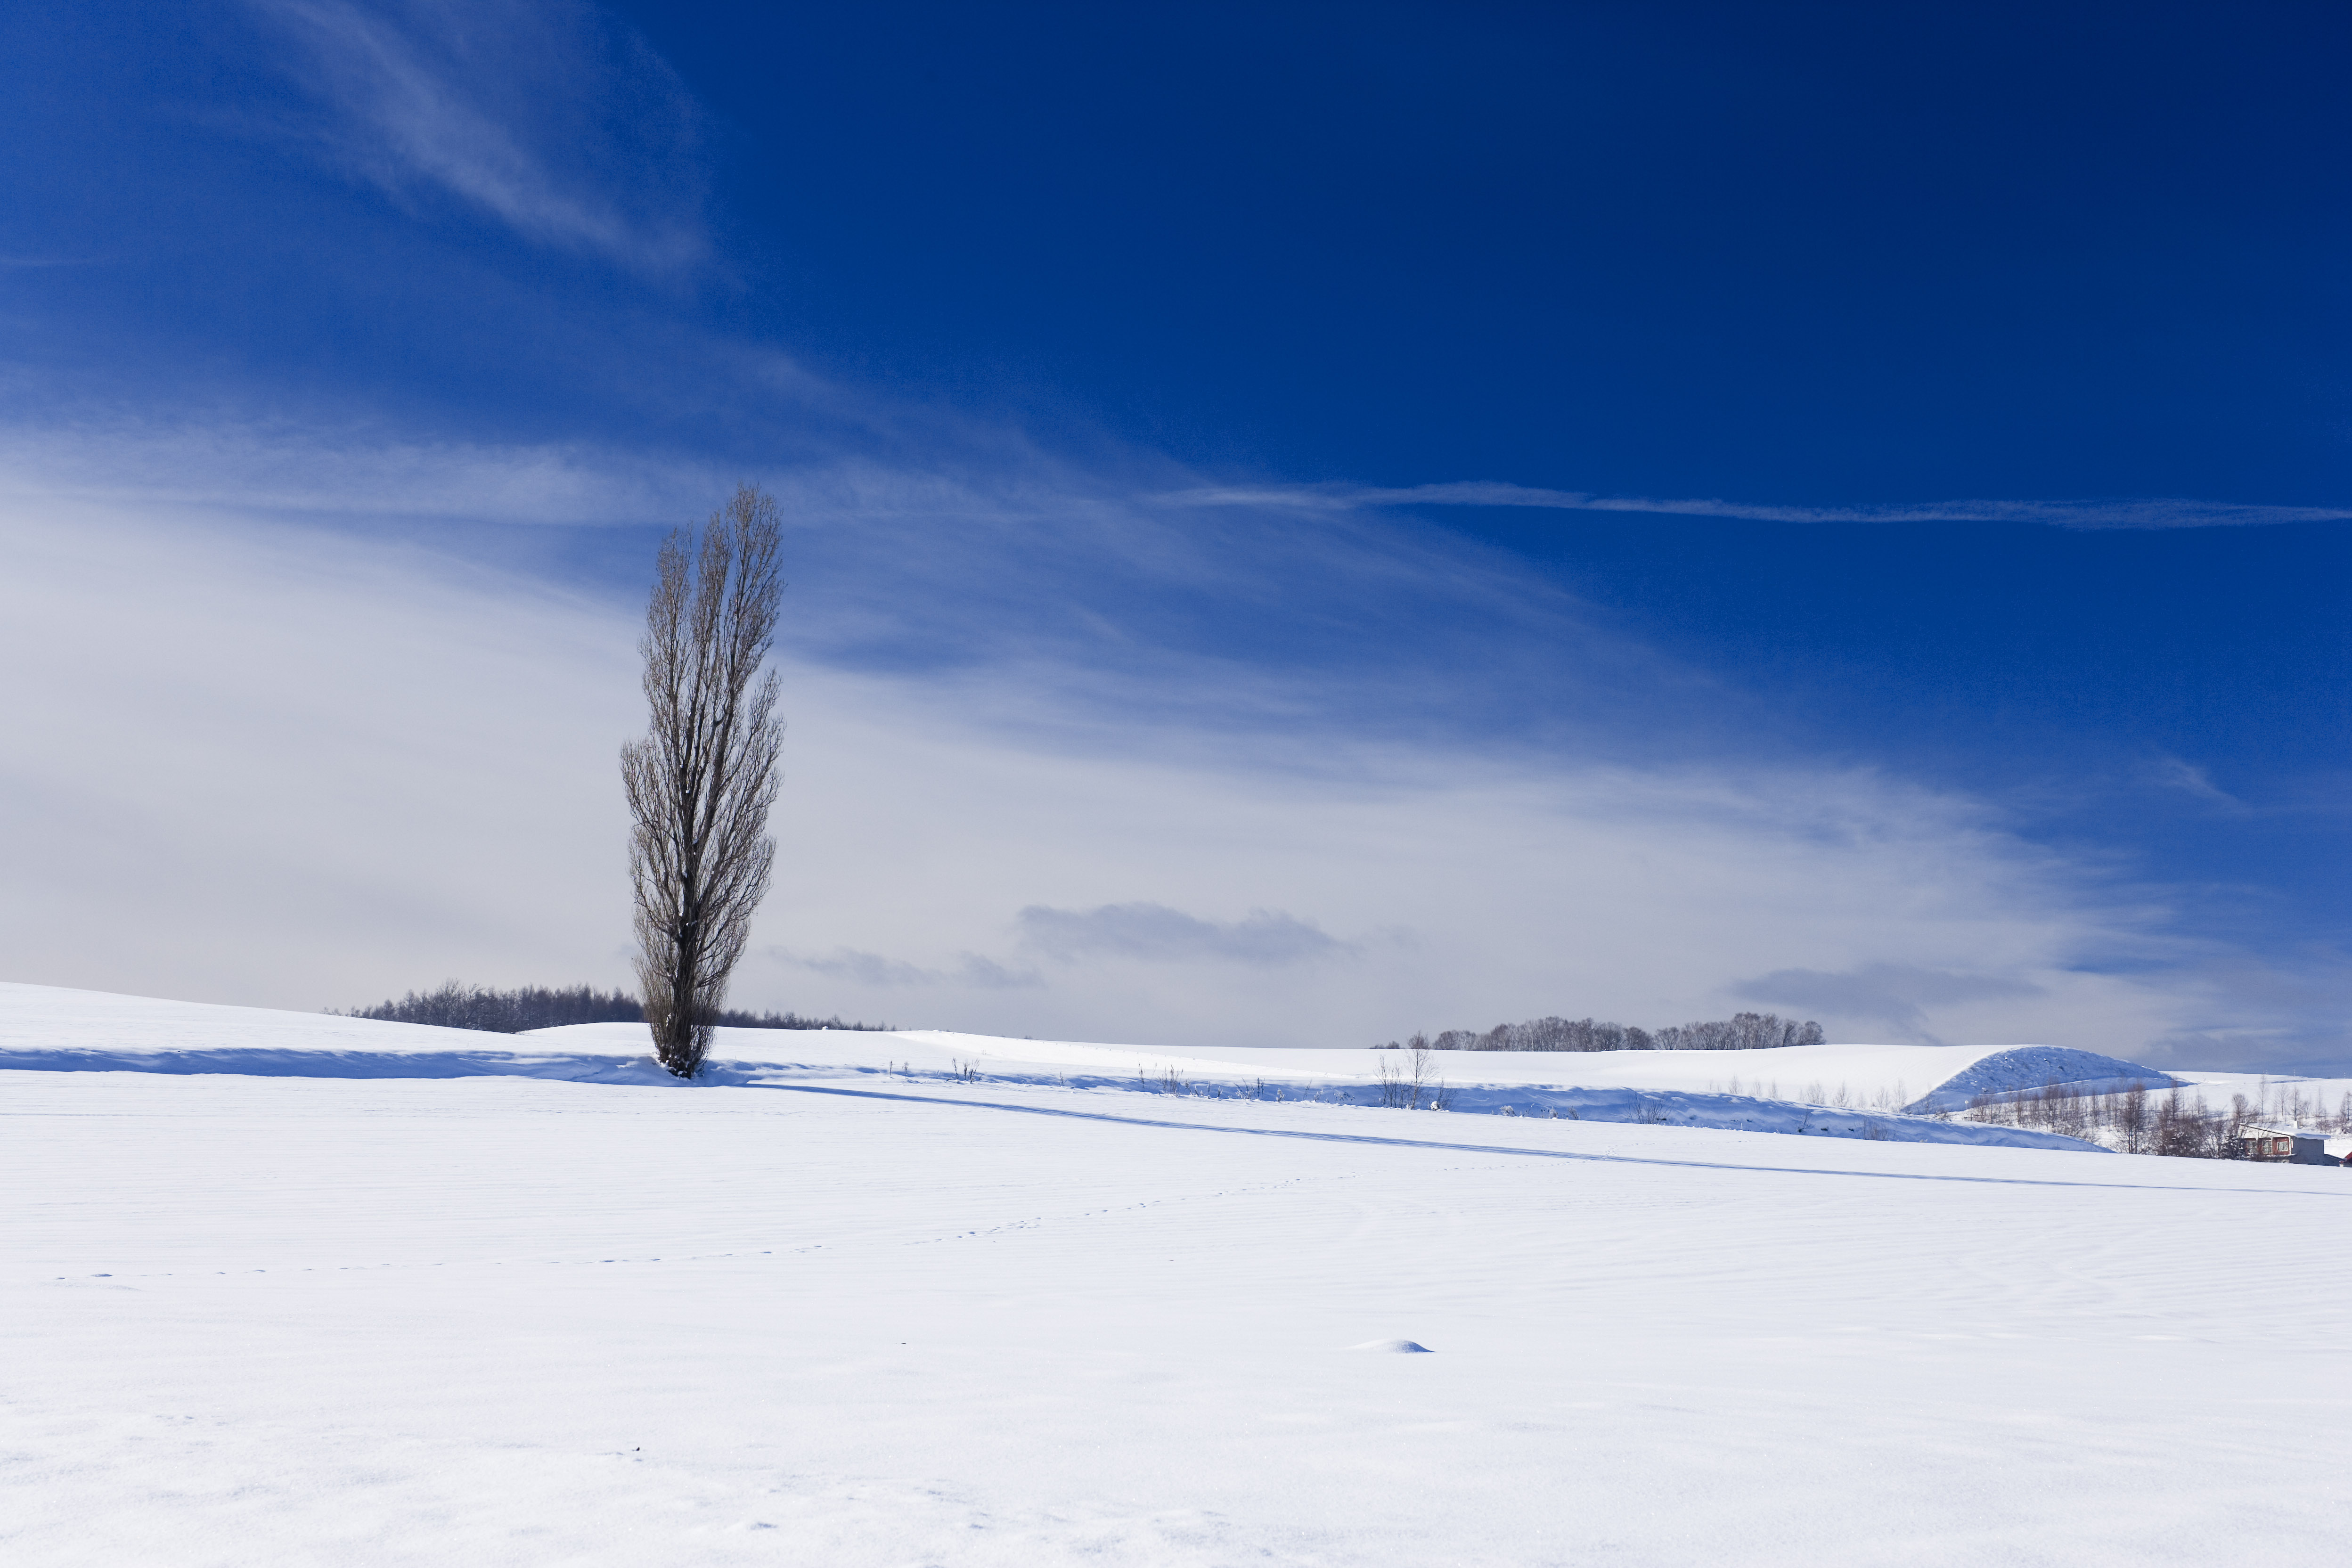 Foto, materiell, befreit, Landschaft, Bild, hat Foto auf Lager,Ein schneebedecktes Feld, schneebedecktes Feld, Berg, Baum, blauer Himmel